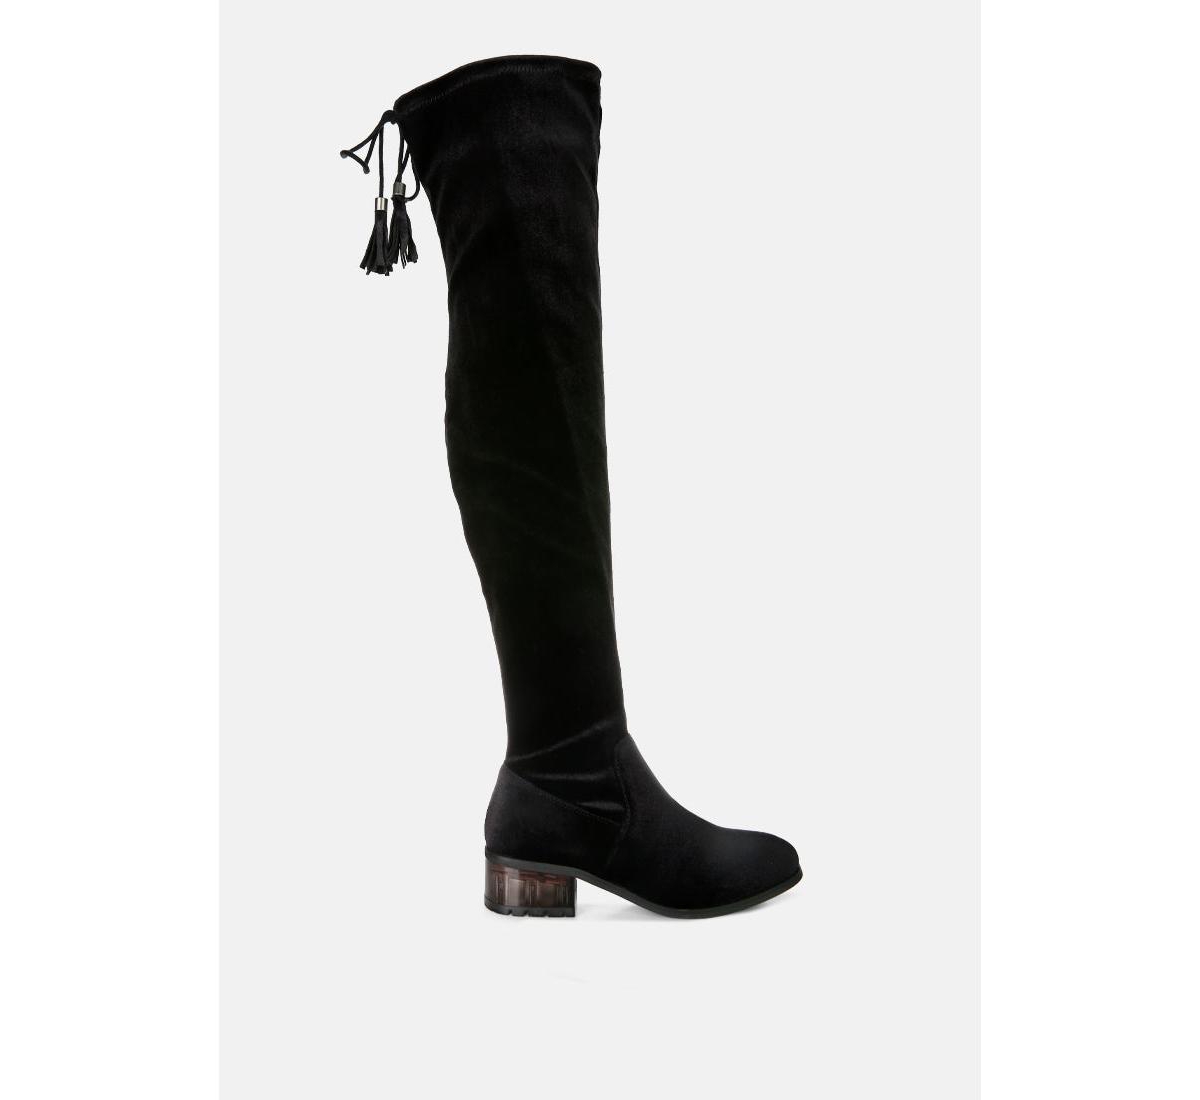 rumple velvet over the knee clear heel boots - Grey